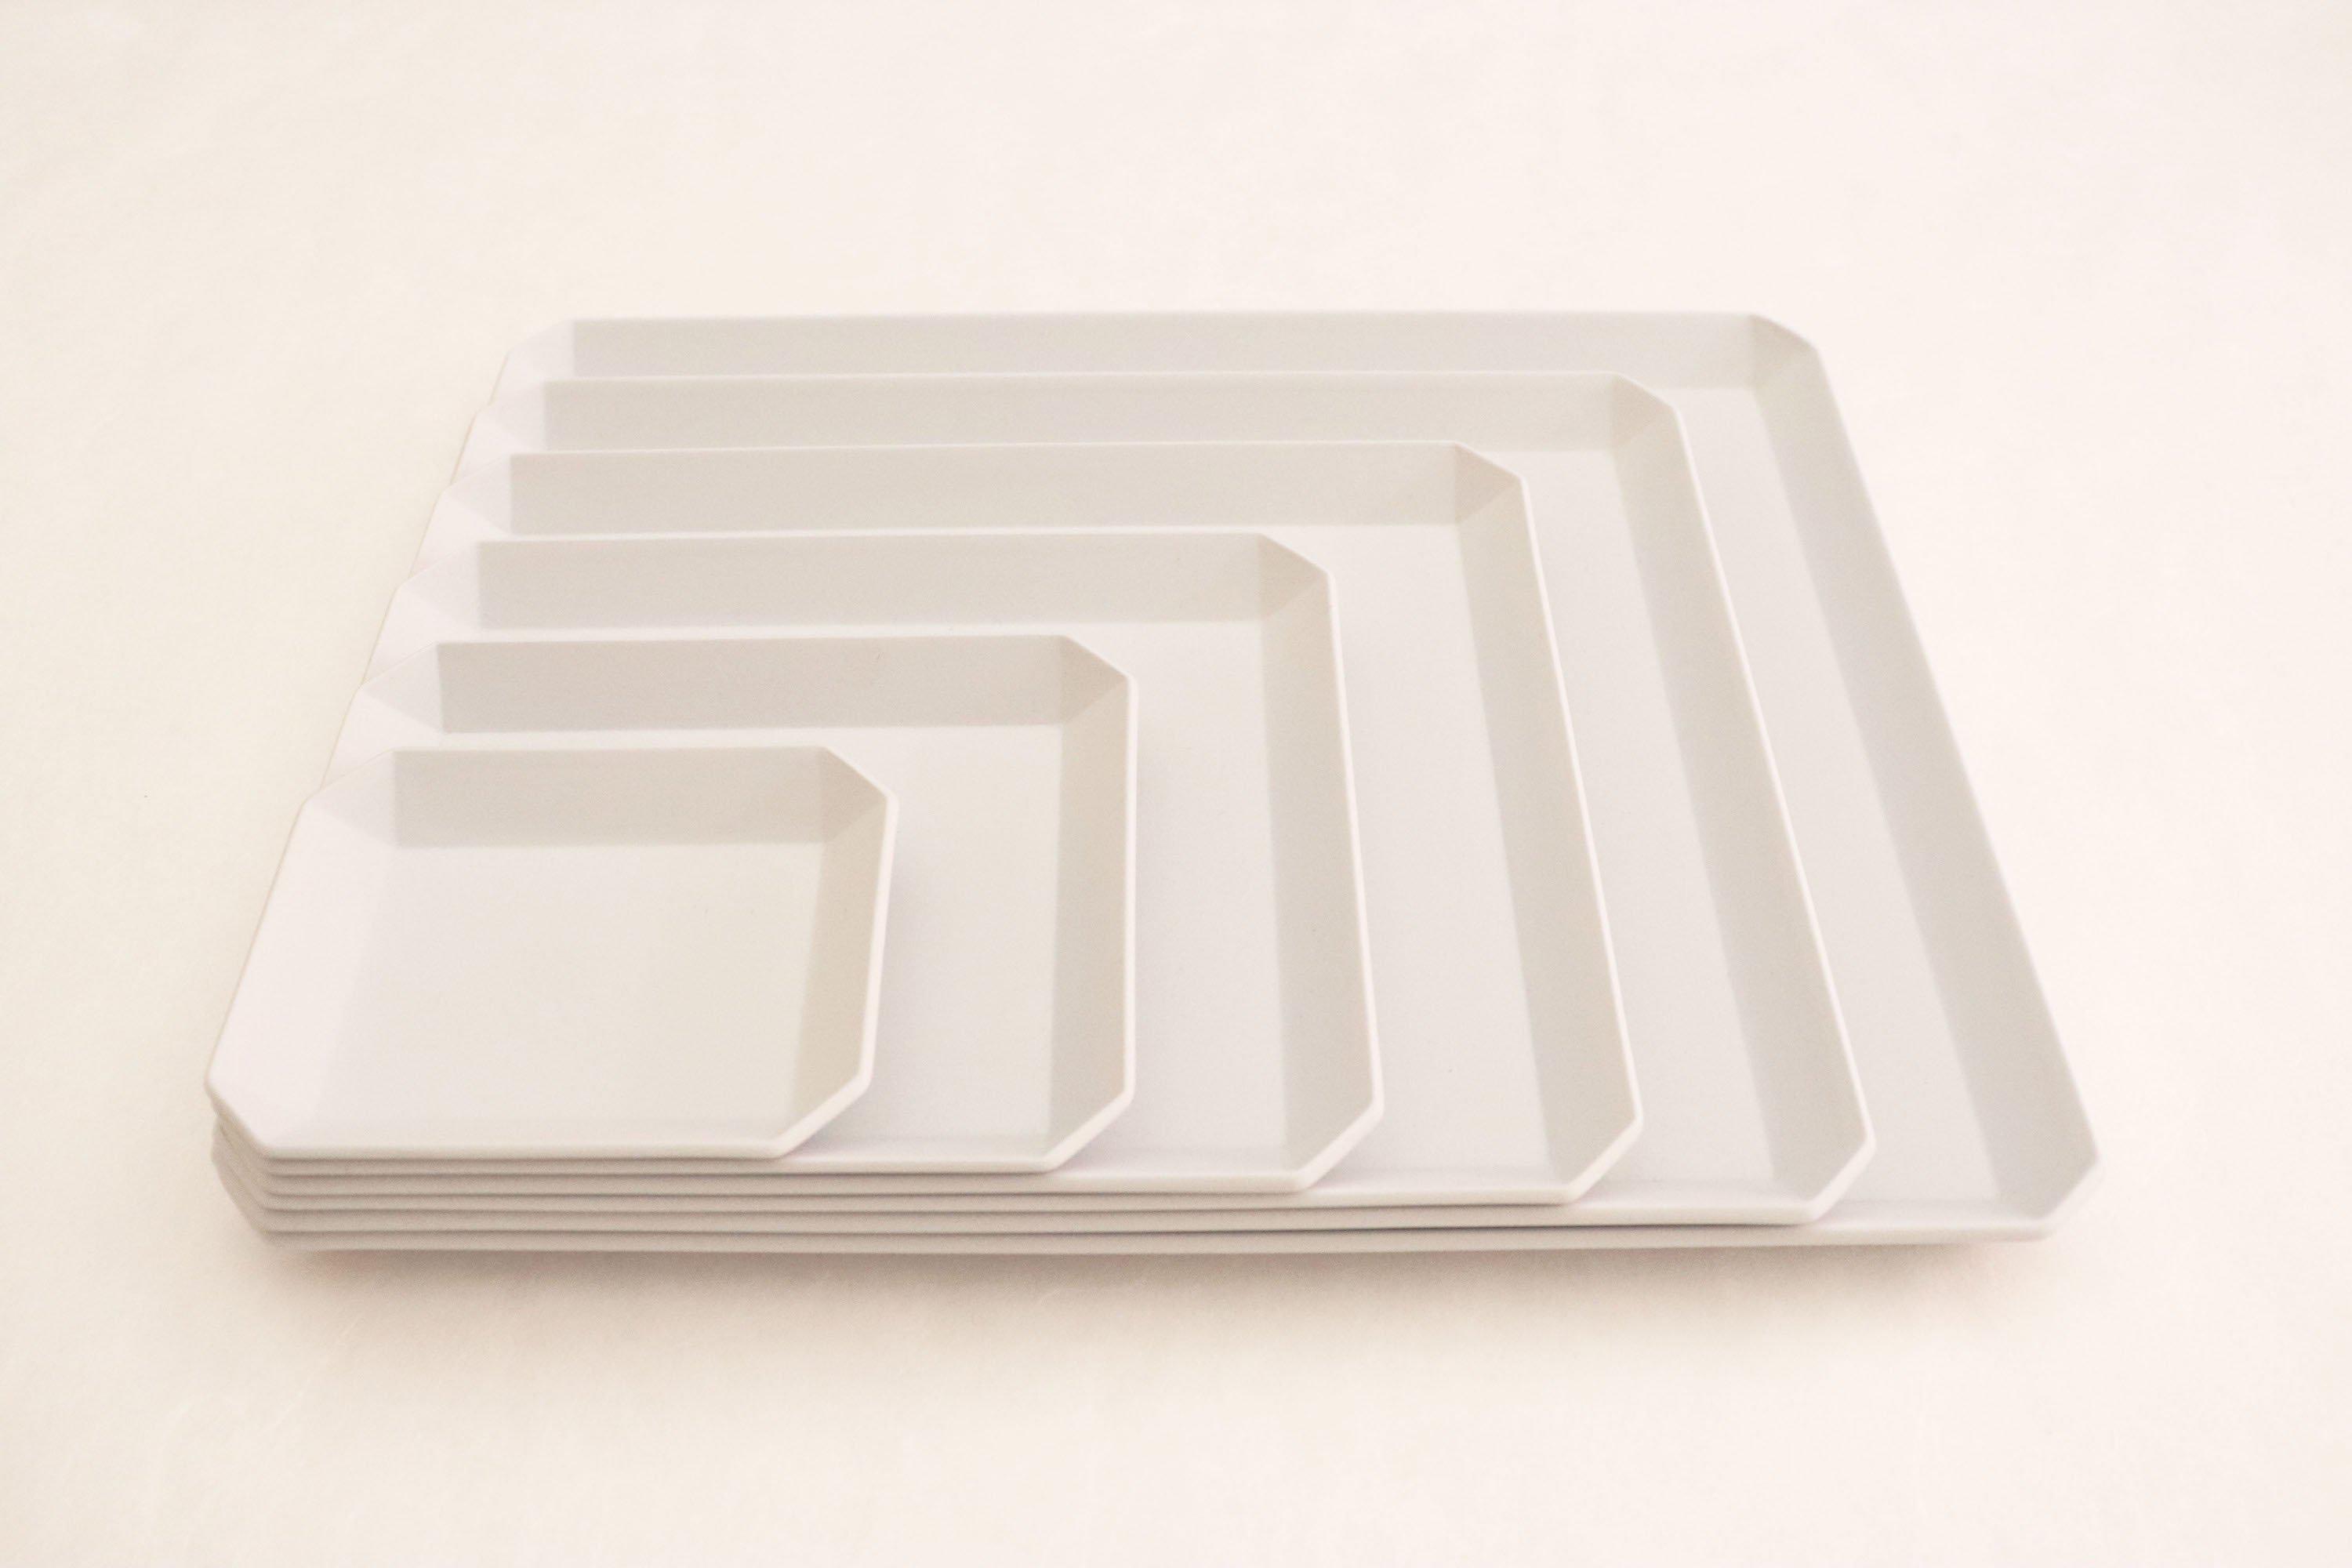 TY"Standard" Square Plate plain Gray 200-1616 / arita japan-YUGEN ONLINE STORE